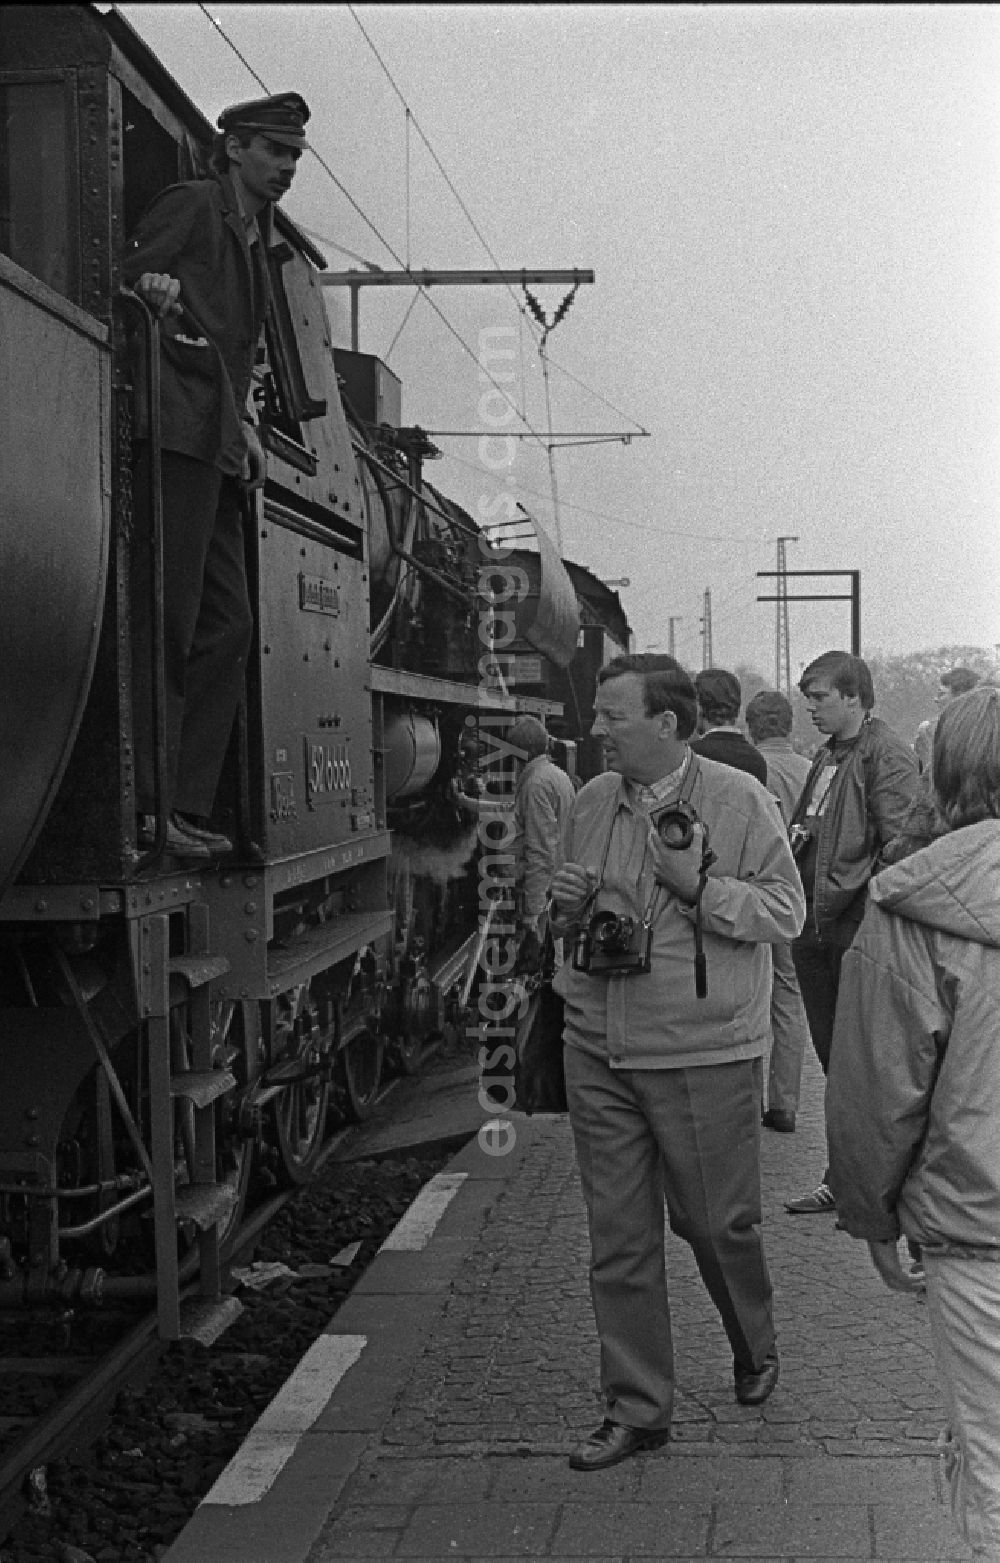 Fürstenberg/Havel: Steam locomotive of the Deutsche Reichsbahn of the class 38 Pufferkuesser in Fuerstenberg / Havel in the federal state Brandenburg on the territory of the former GDR, German Democratic Republic